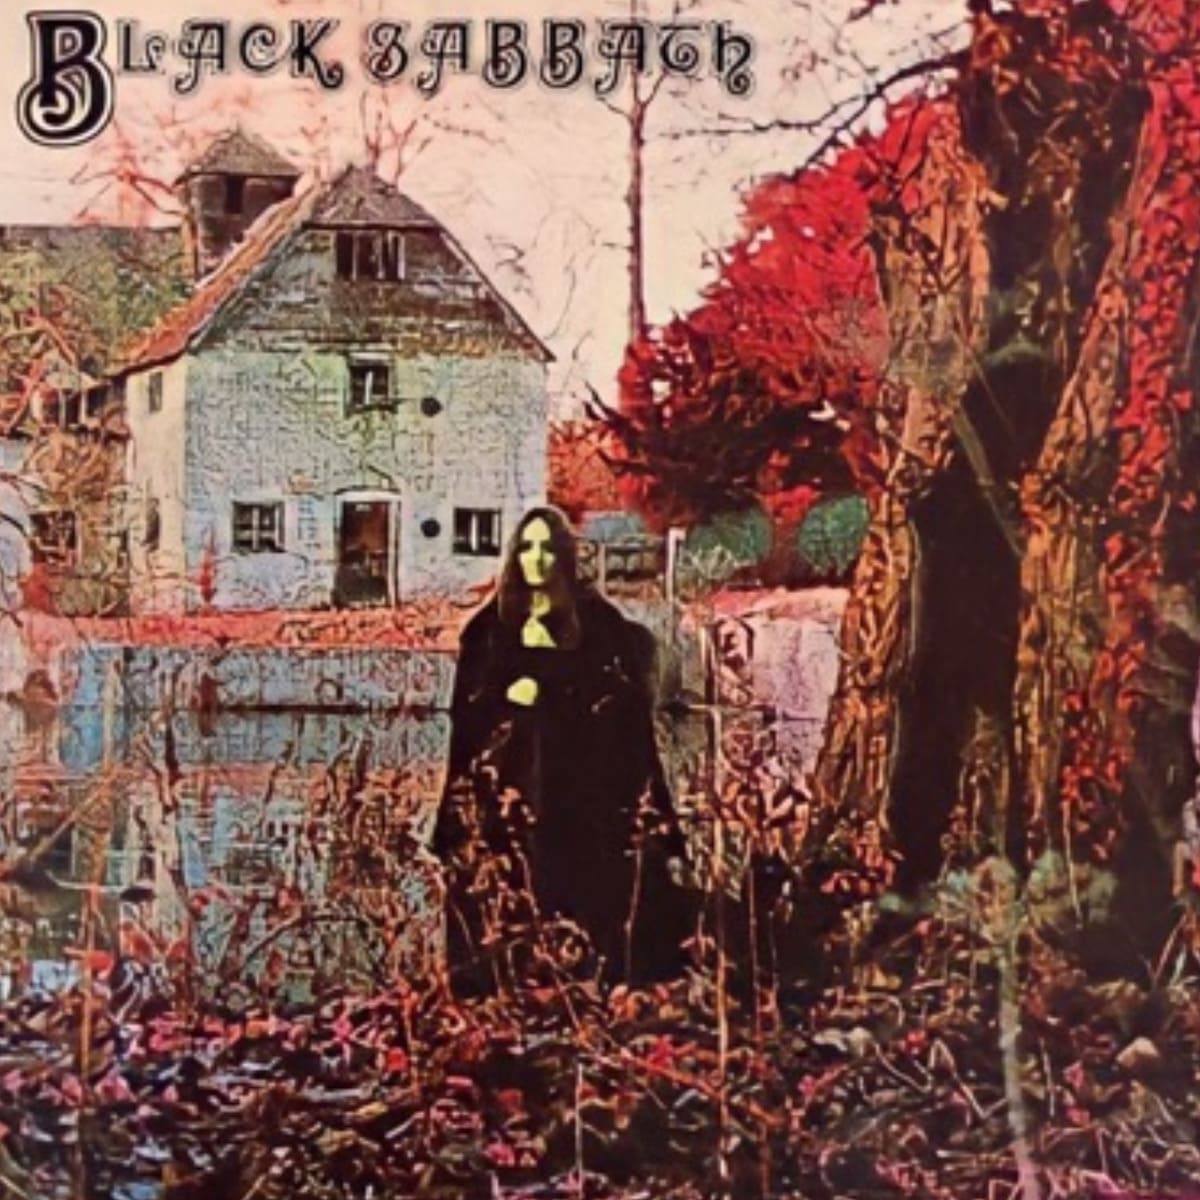 Pochette de l'album "Black Sabbath" du groupe Black Sabbath